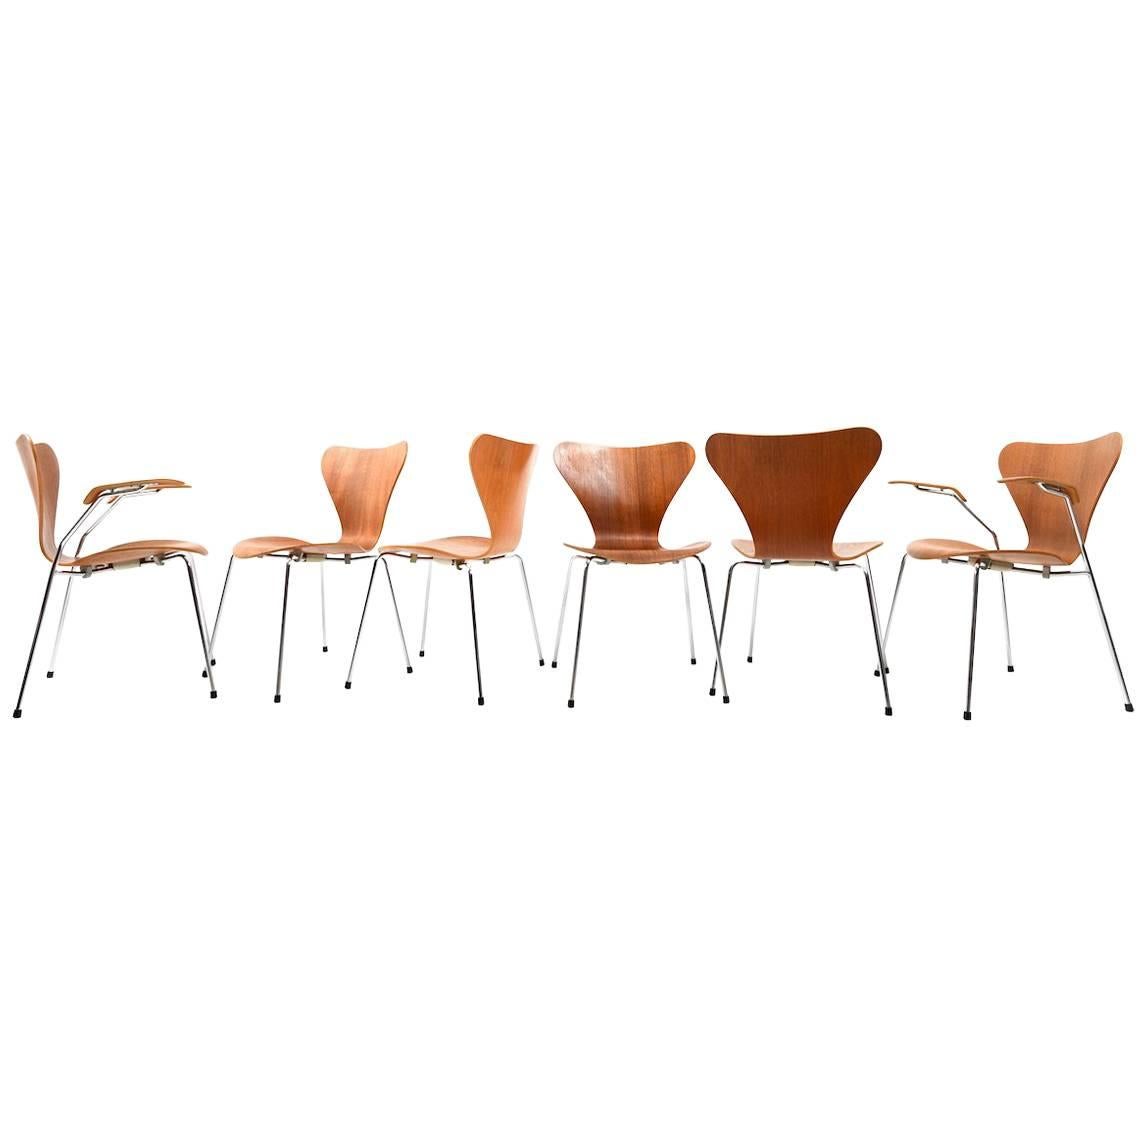 Set of Six Arne Jacobsen Chairs in Teak "Series 7"